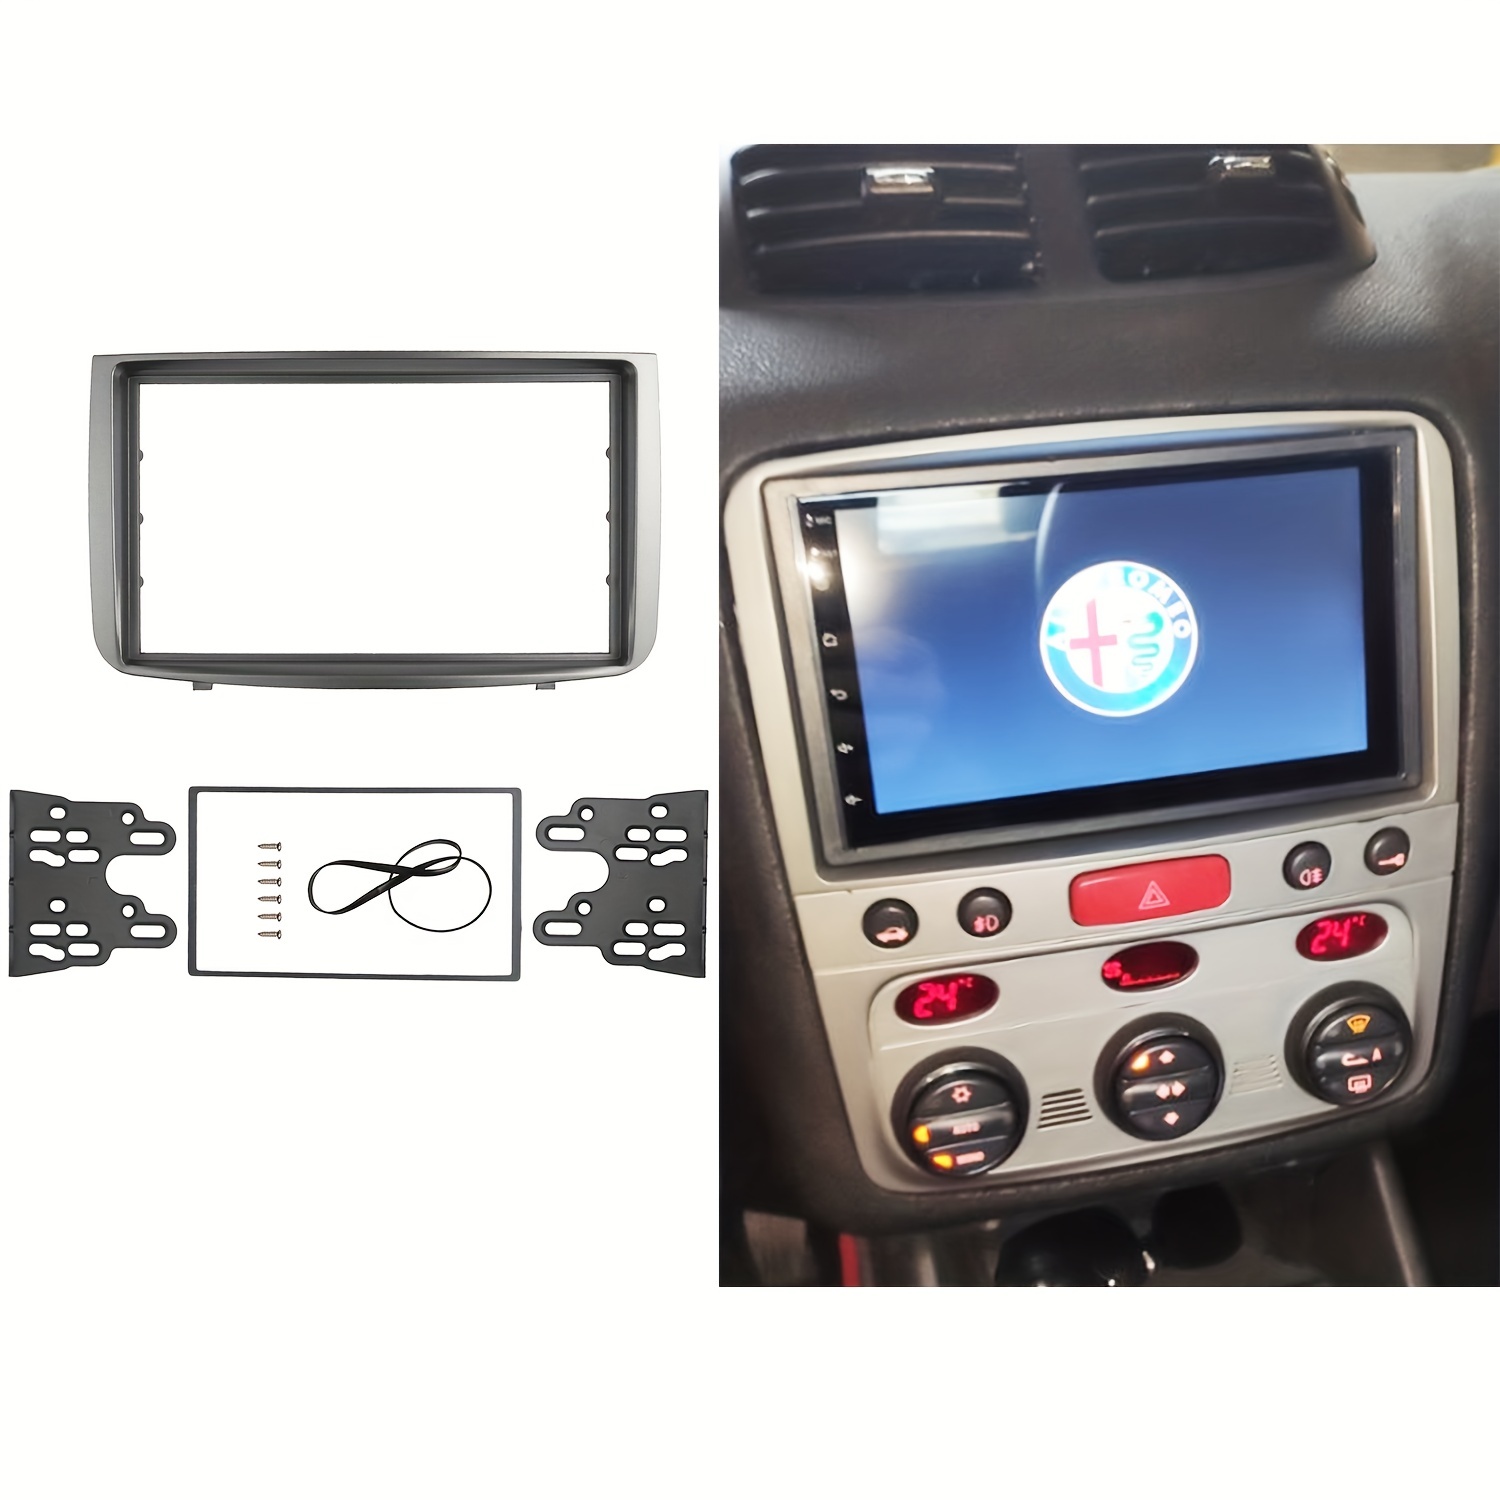 Panel de montaje de Audio para coche RENAULT Megane I, Radio Scenic, CD,  GPS, DVD, estéreo, marco de instalación, 1 Din, Fascia, 1996-2002 -  AliExpress